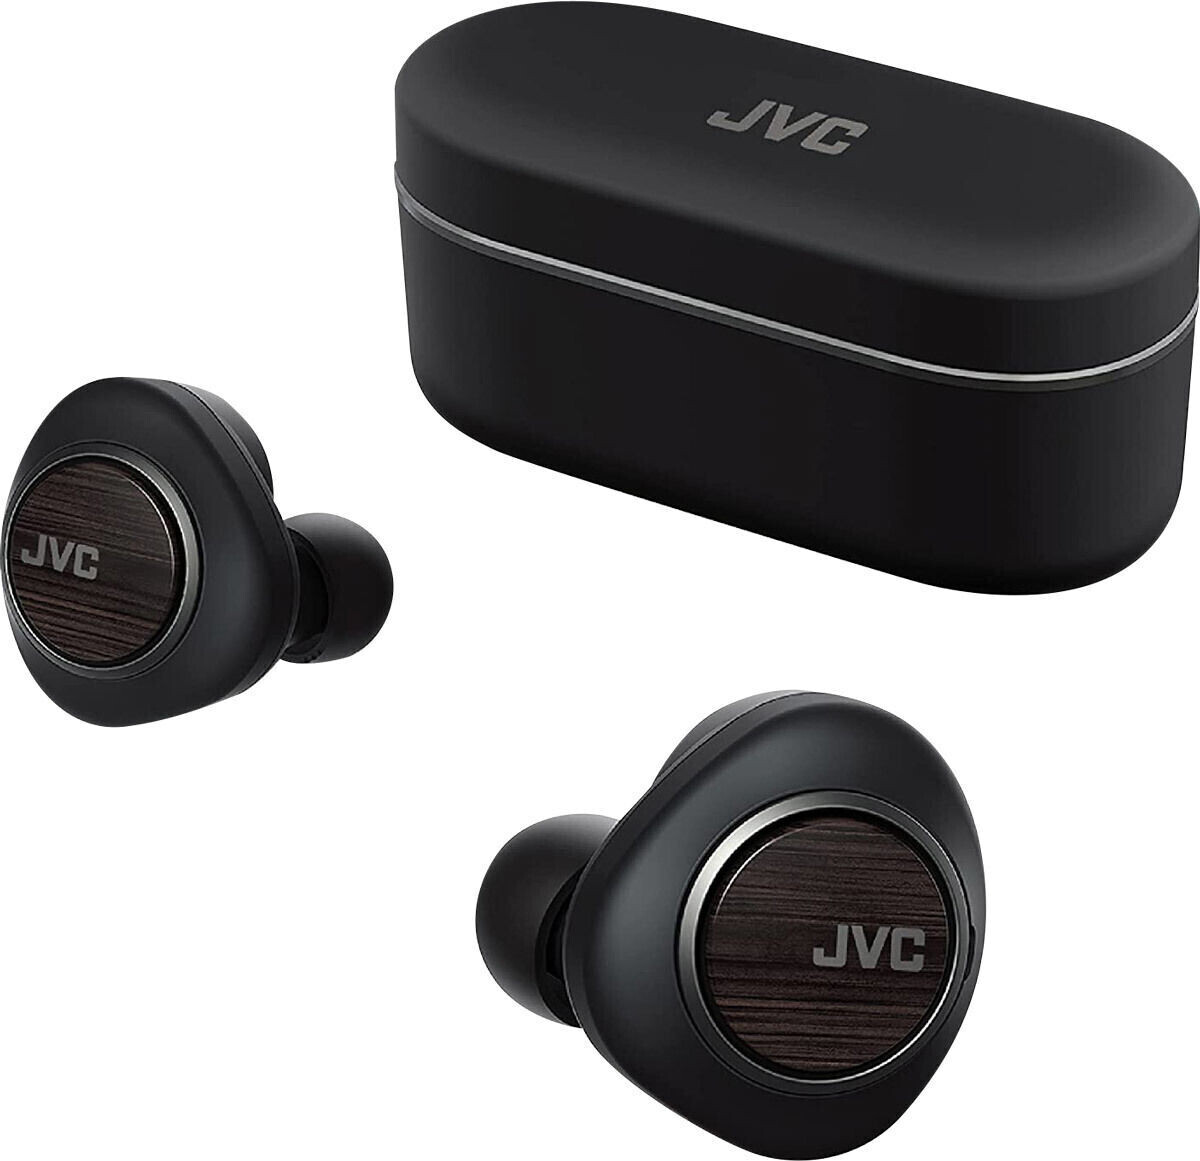 Photos - Headphones JVC HA-FW1000T 